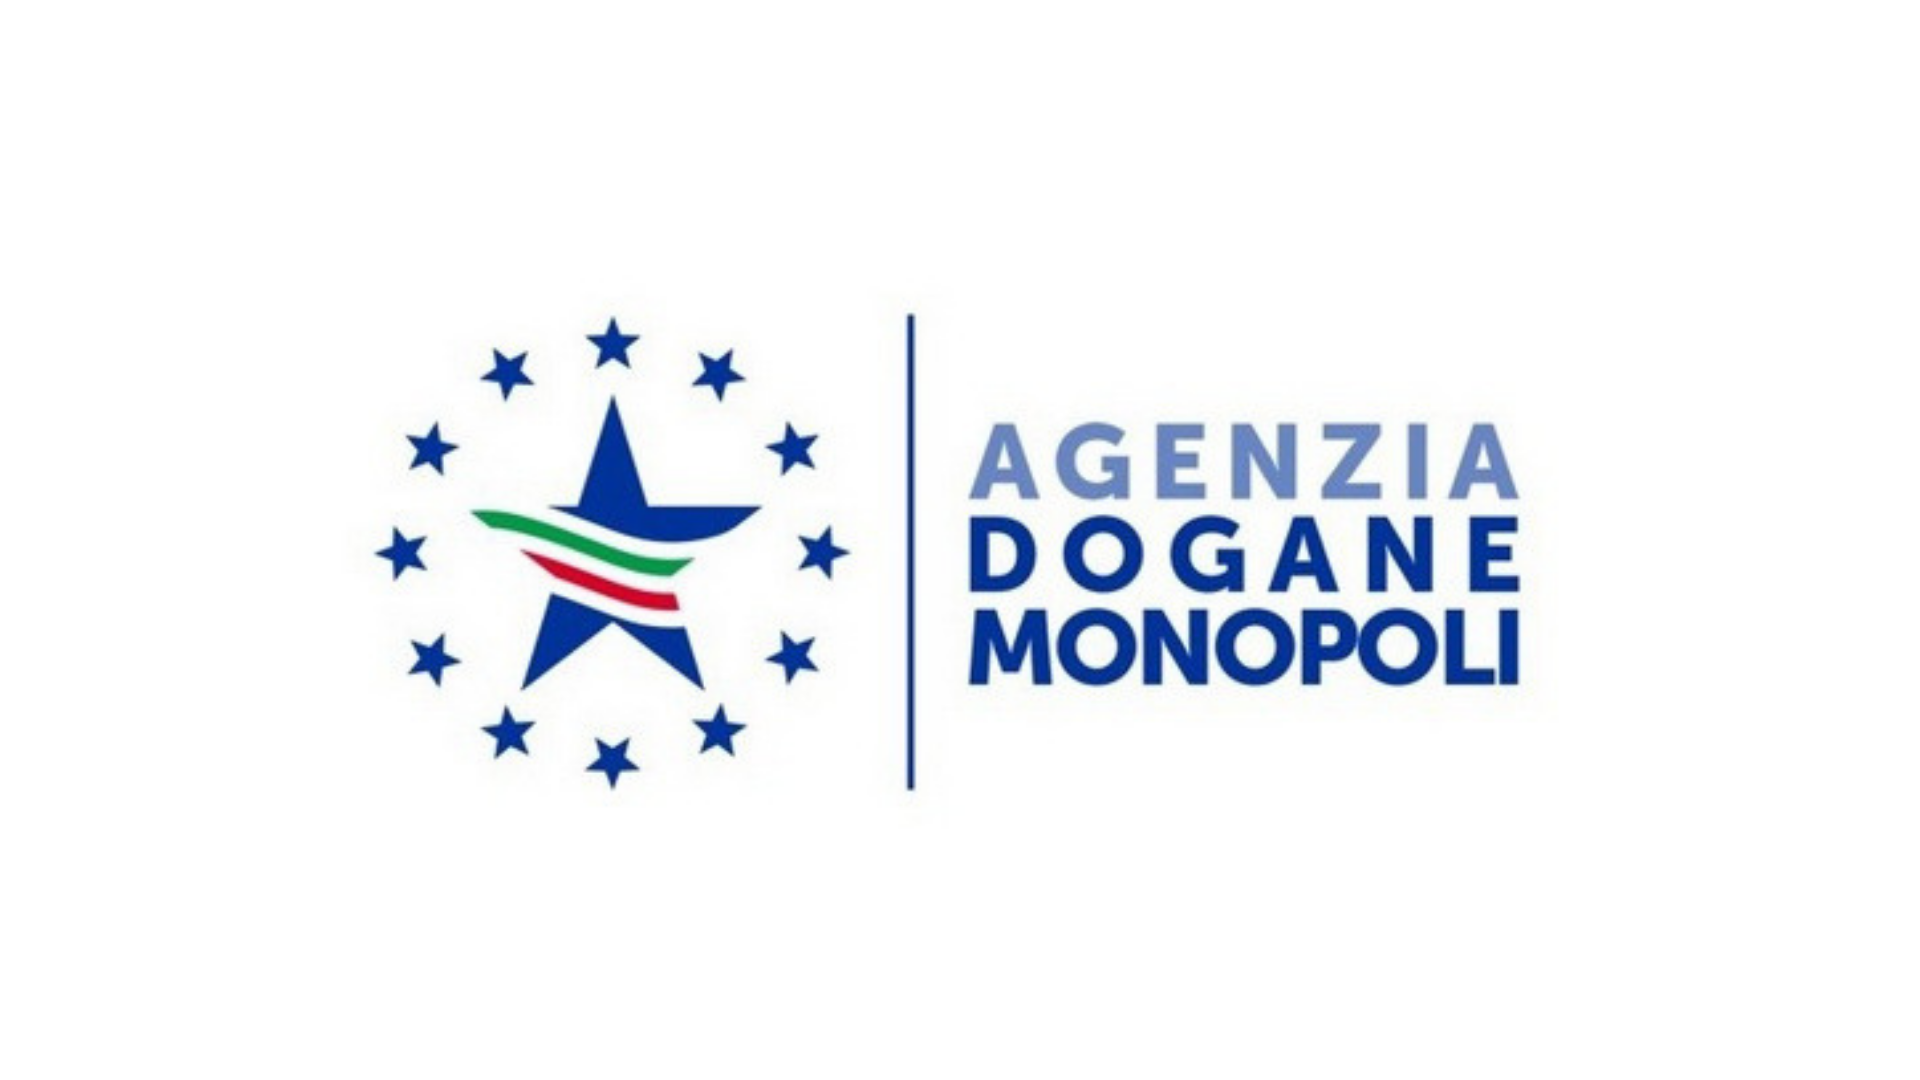 Agenzia Dogane e Monopoli v12